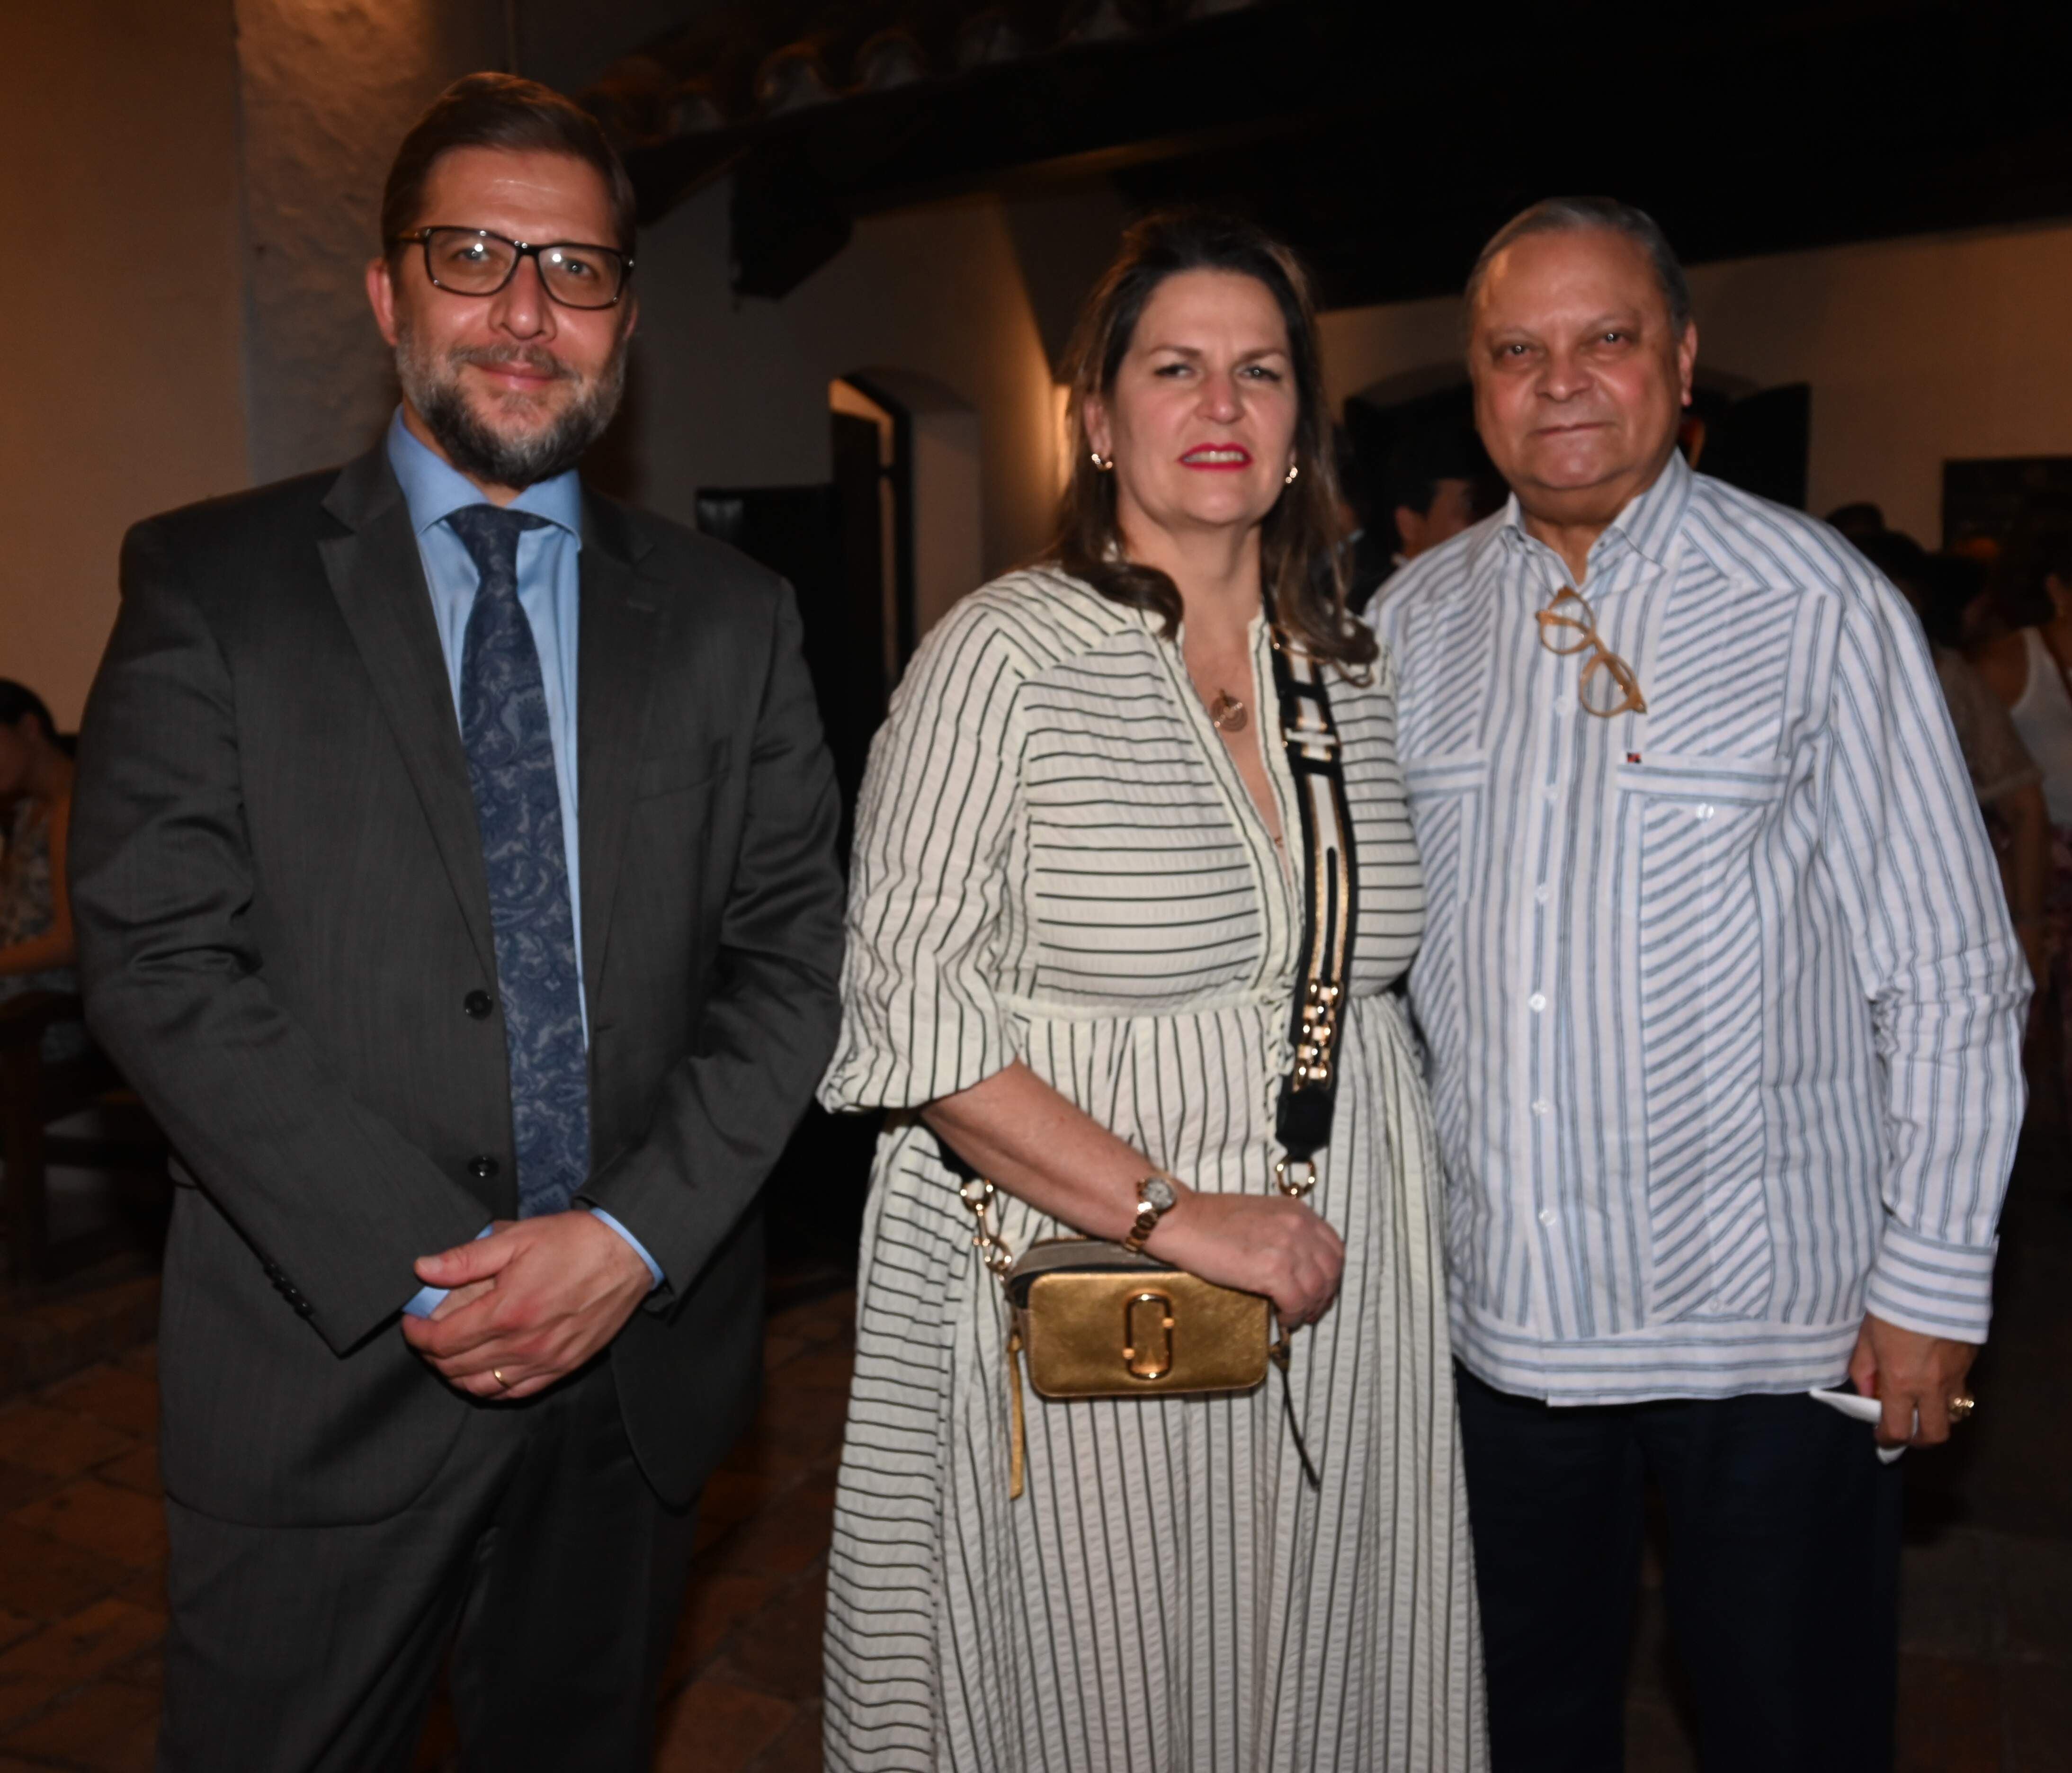 El embajador del Uruguay, Fernando Sandin Tusso, Milena Polanco y el embajador de la República Dominicana, Manuel Polanco Salvador.
